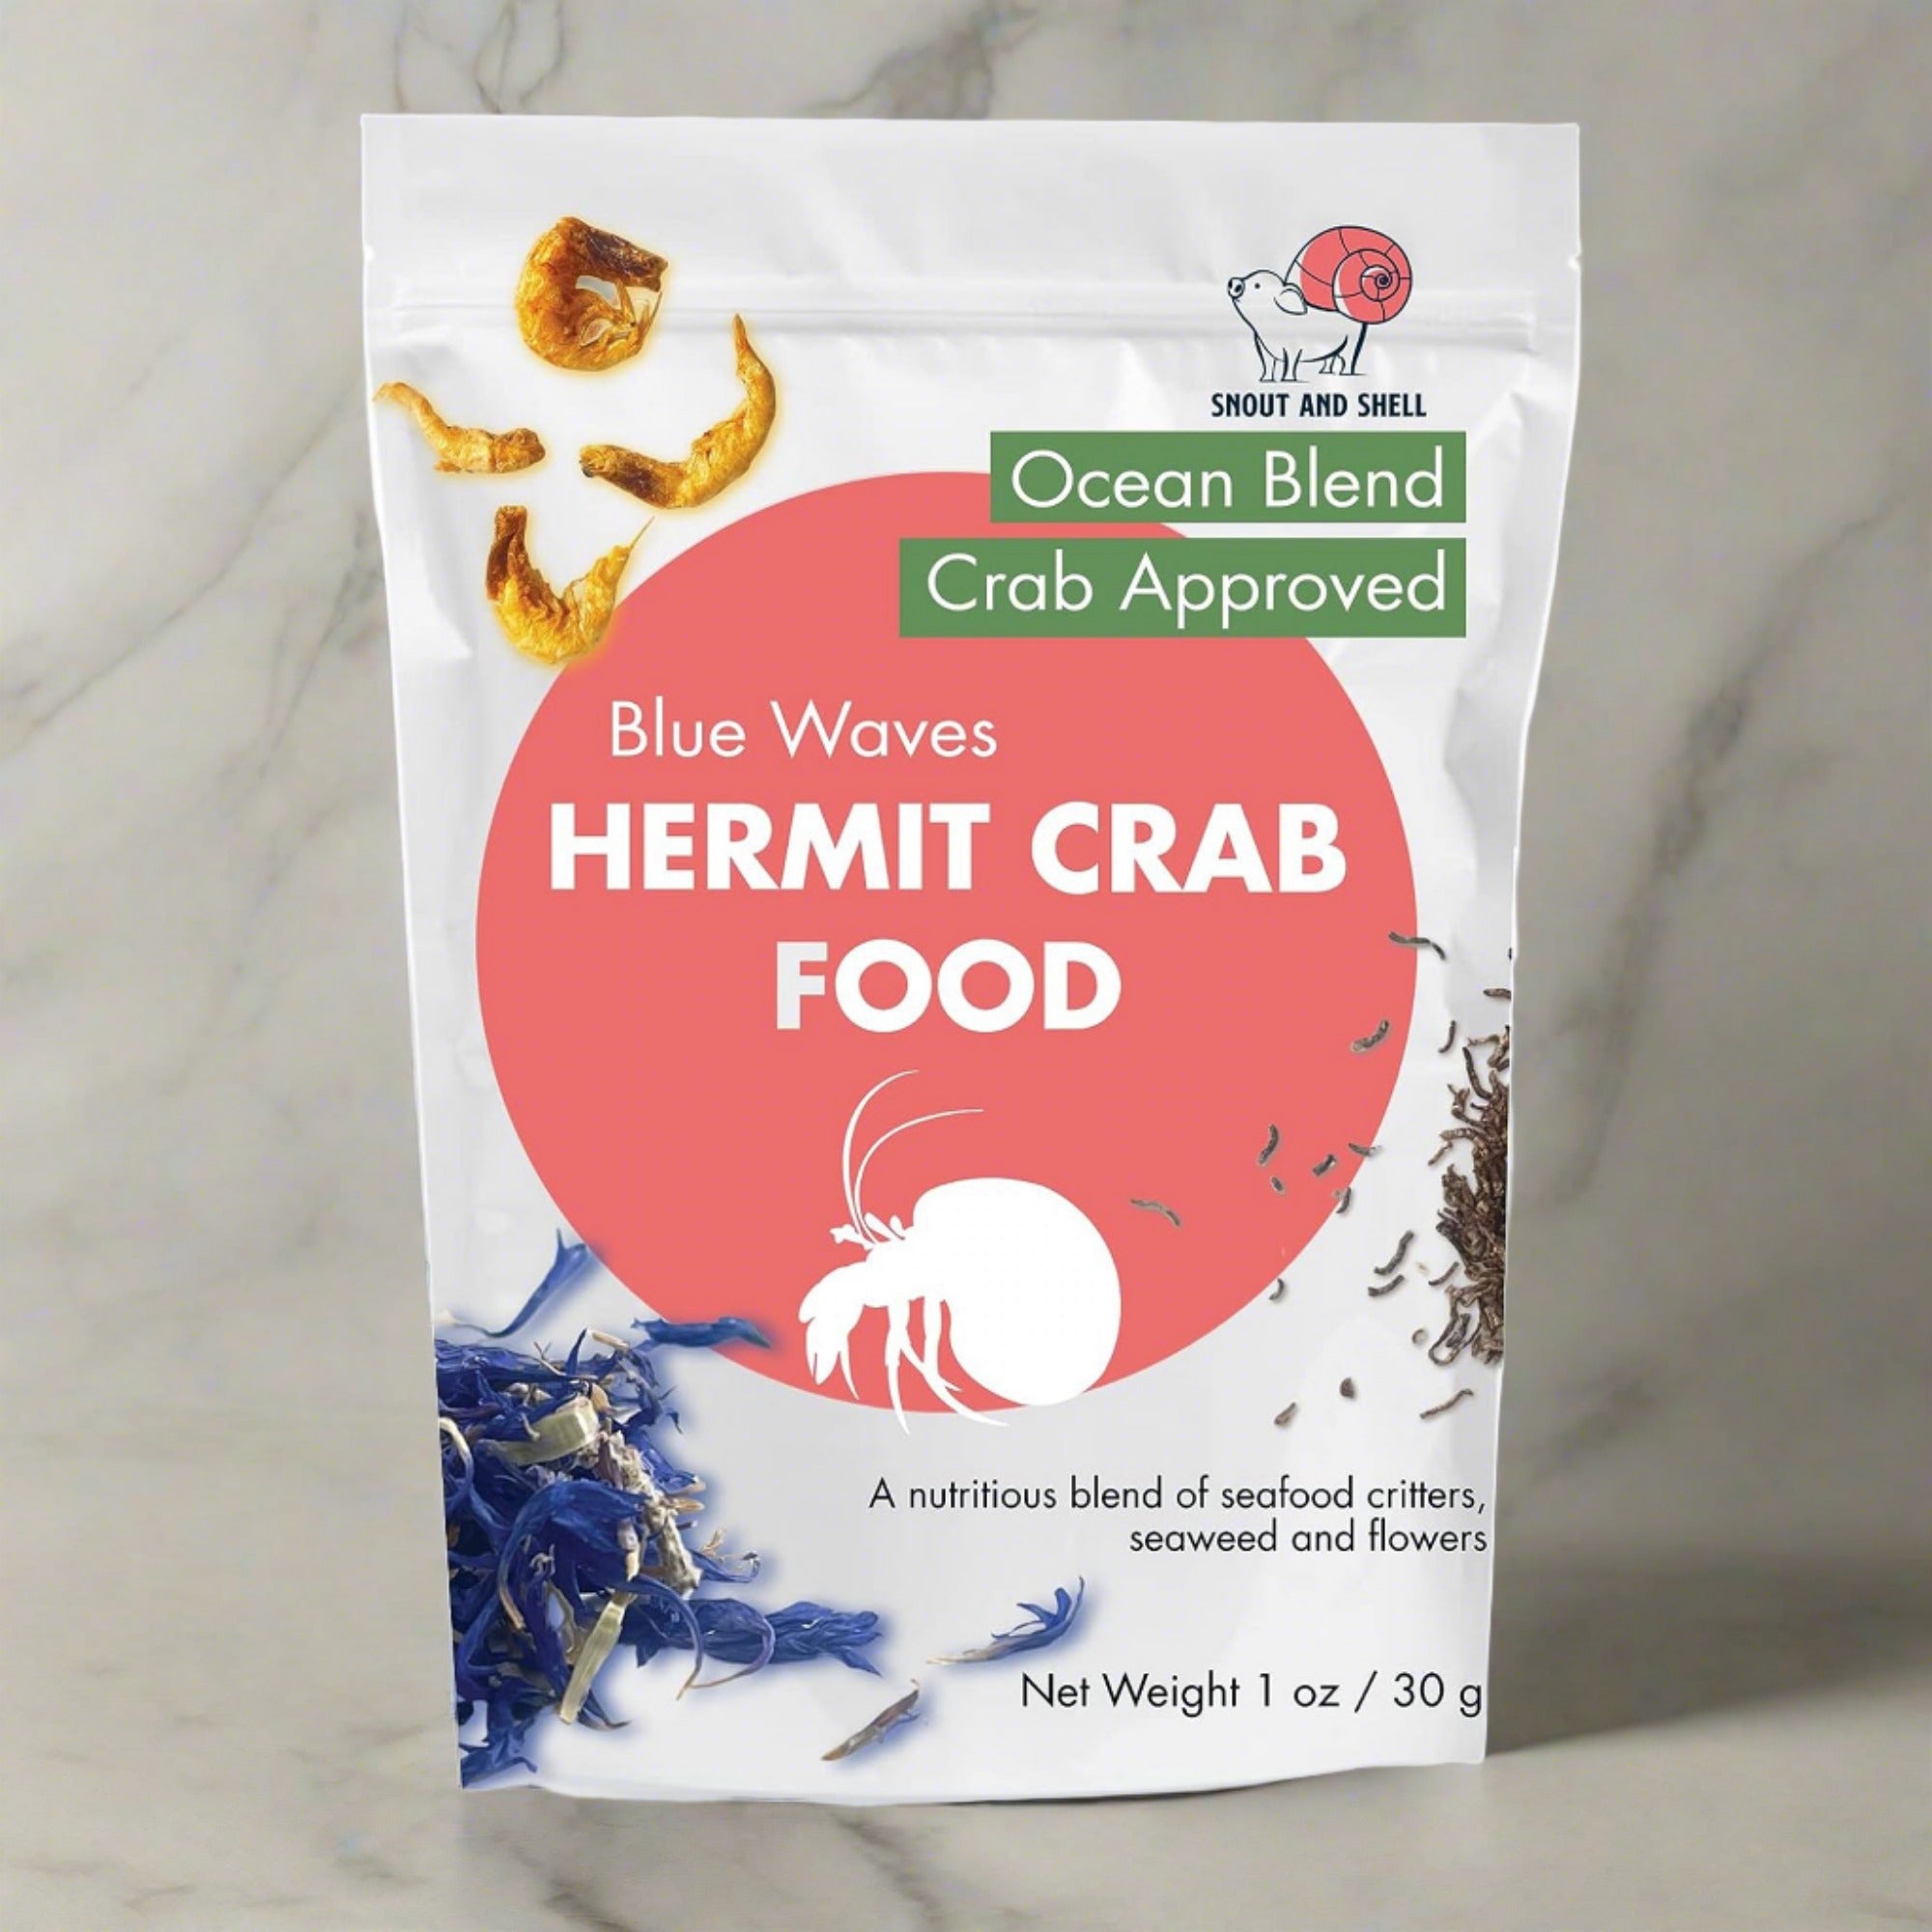 Blue Waves Hermit Crab Food